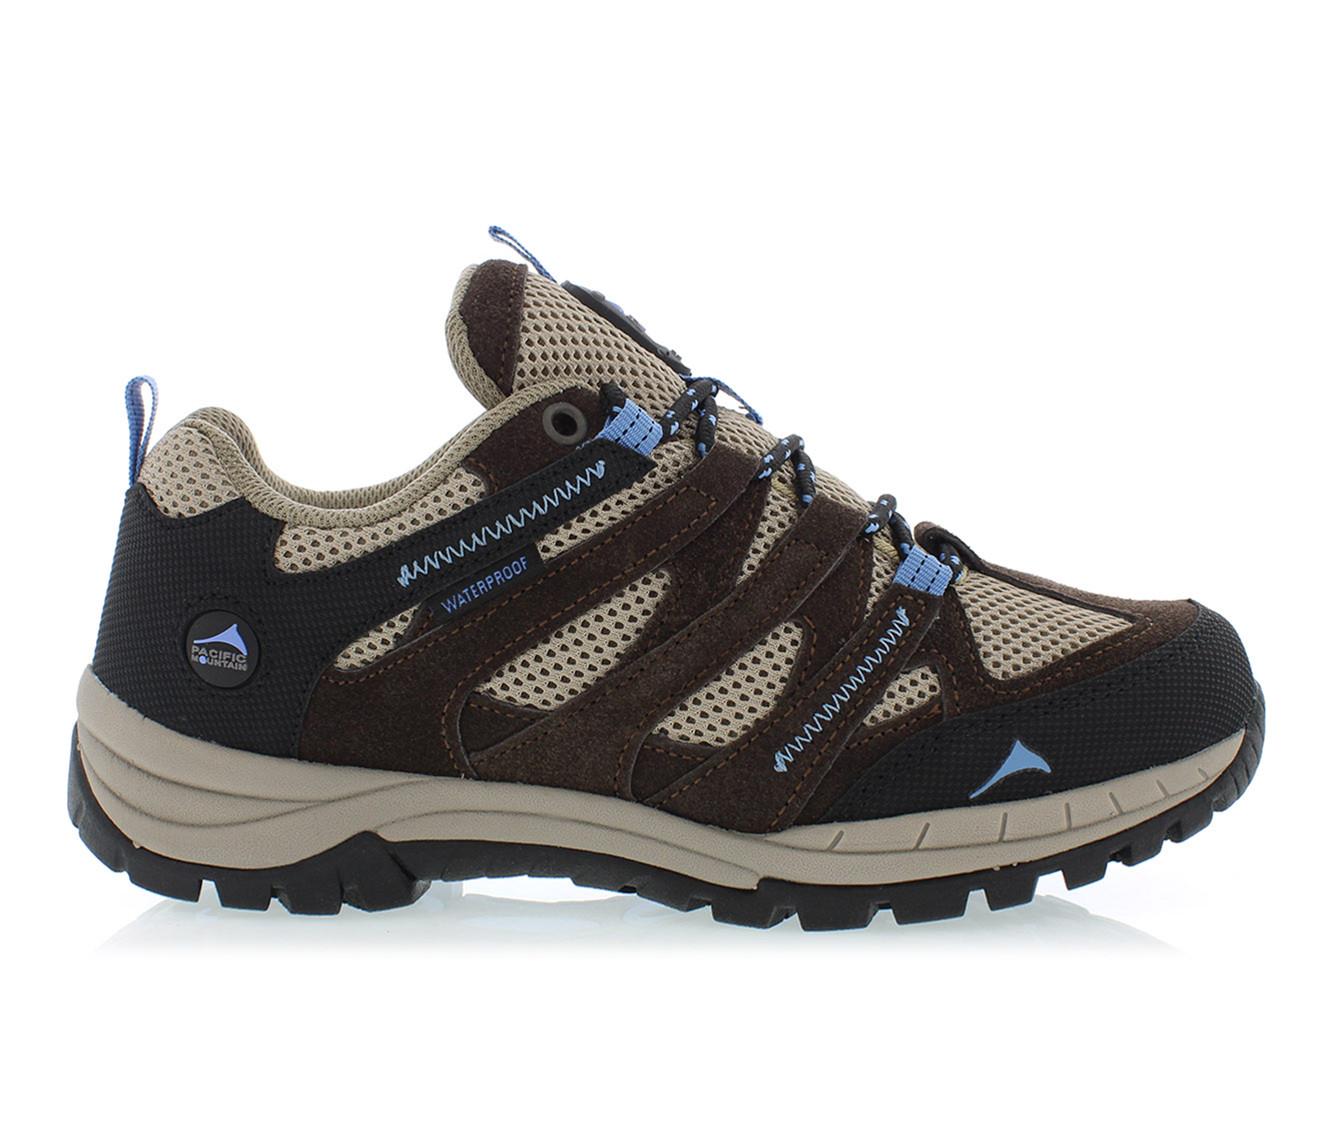 Women's Pacific Mountain Colorado Low Waterproof Hiking Shoes